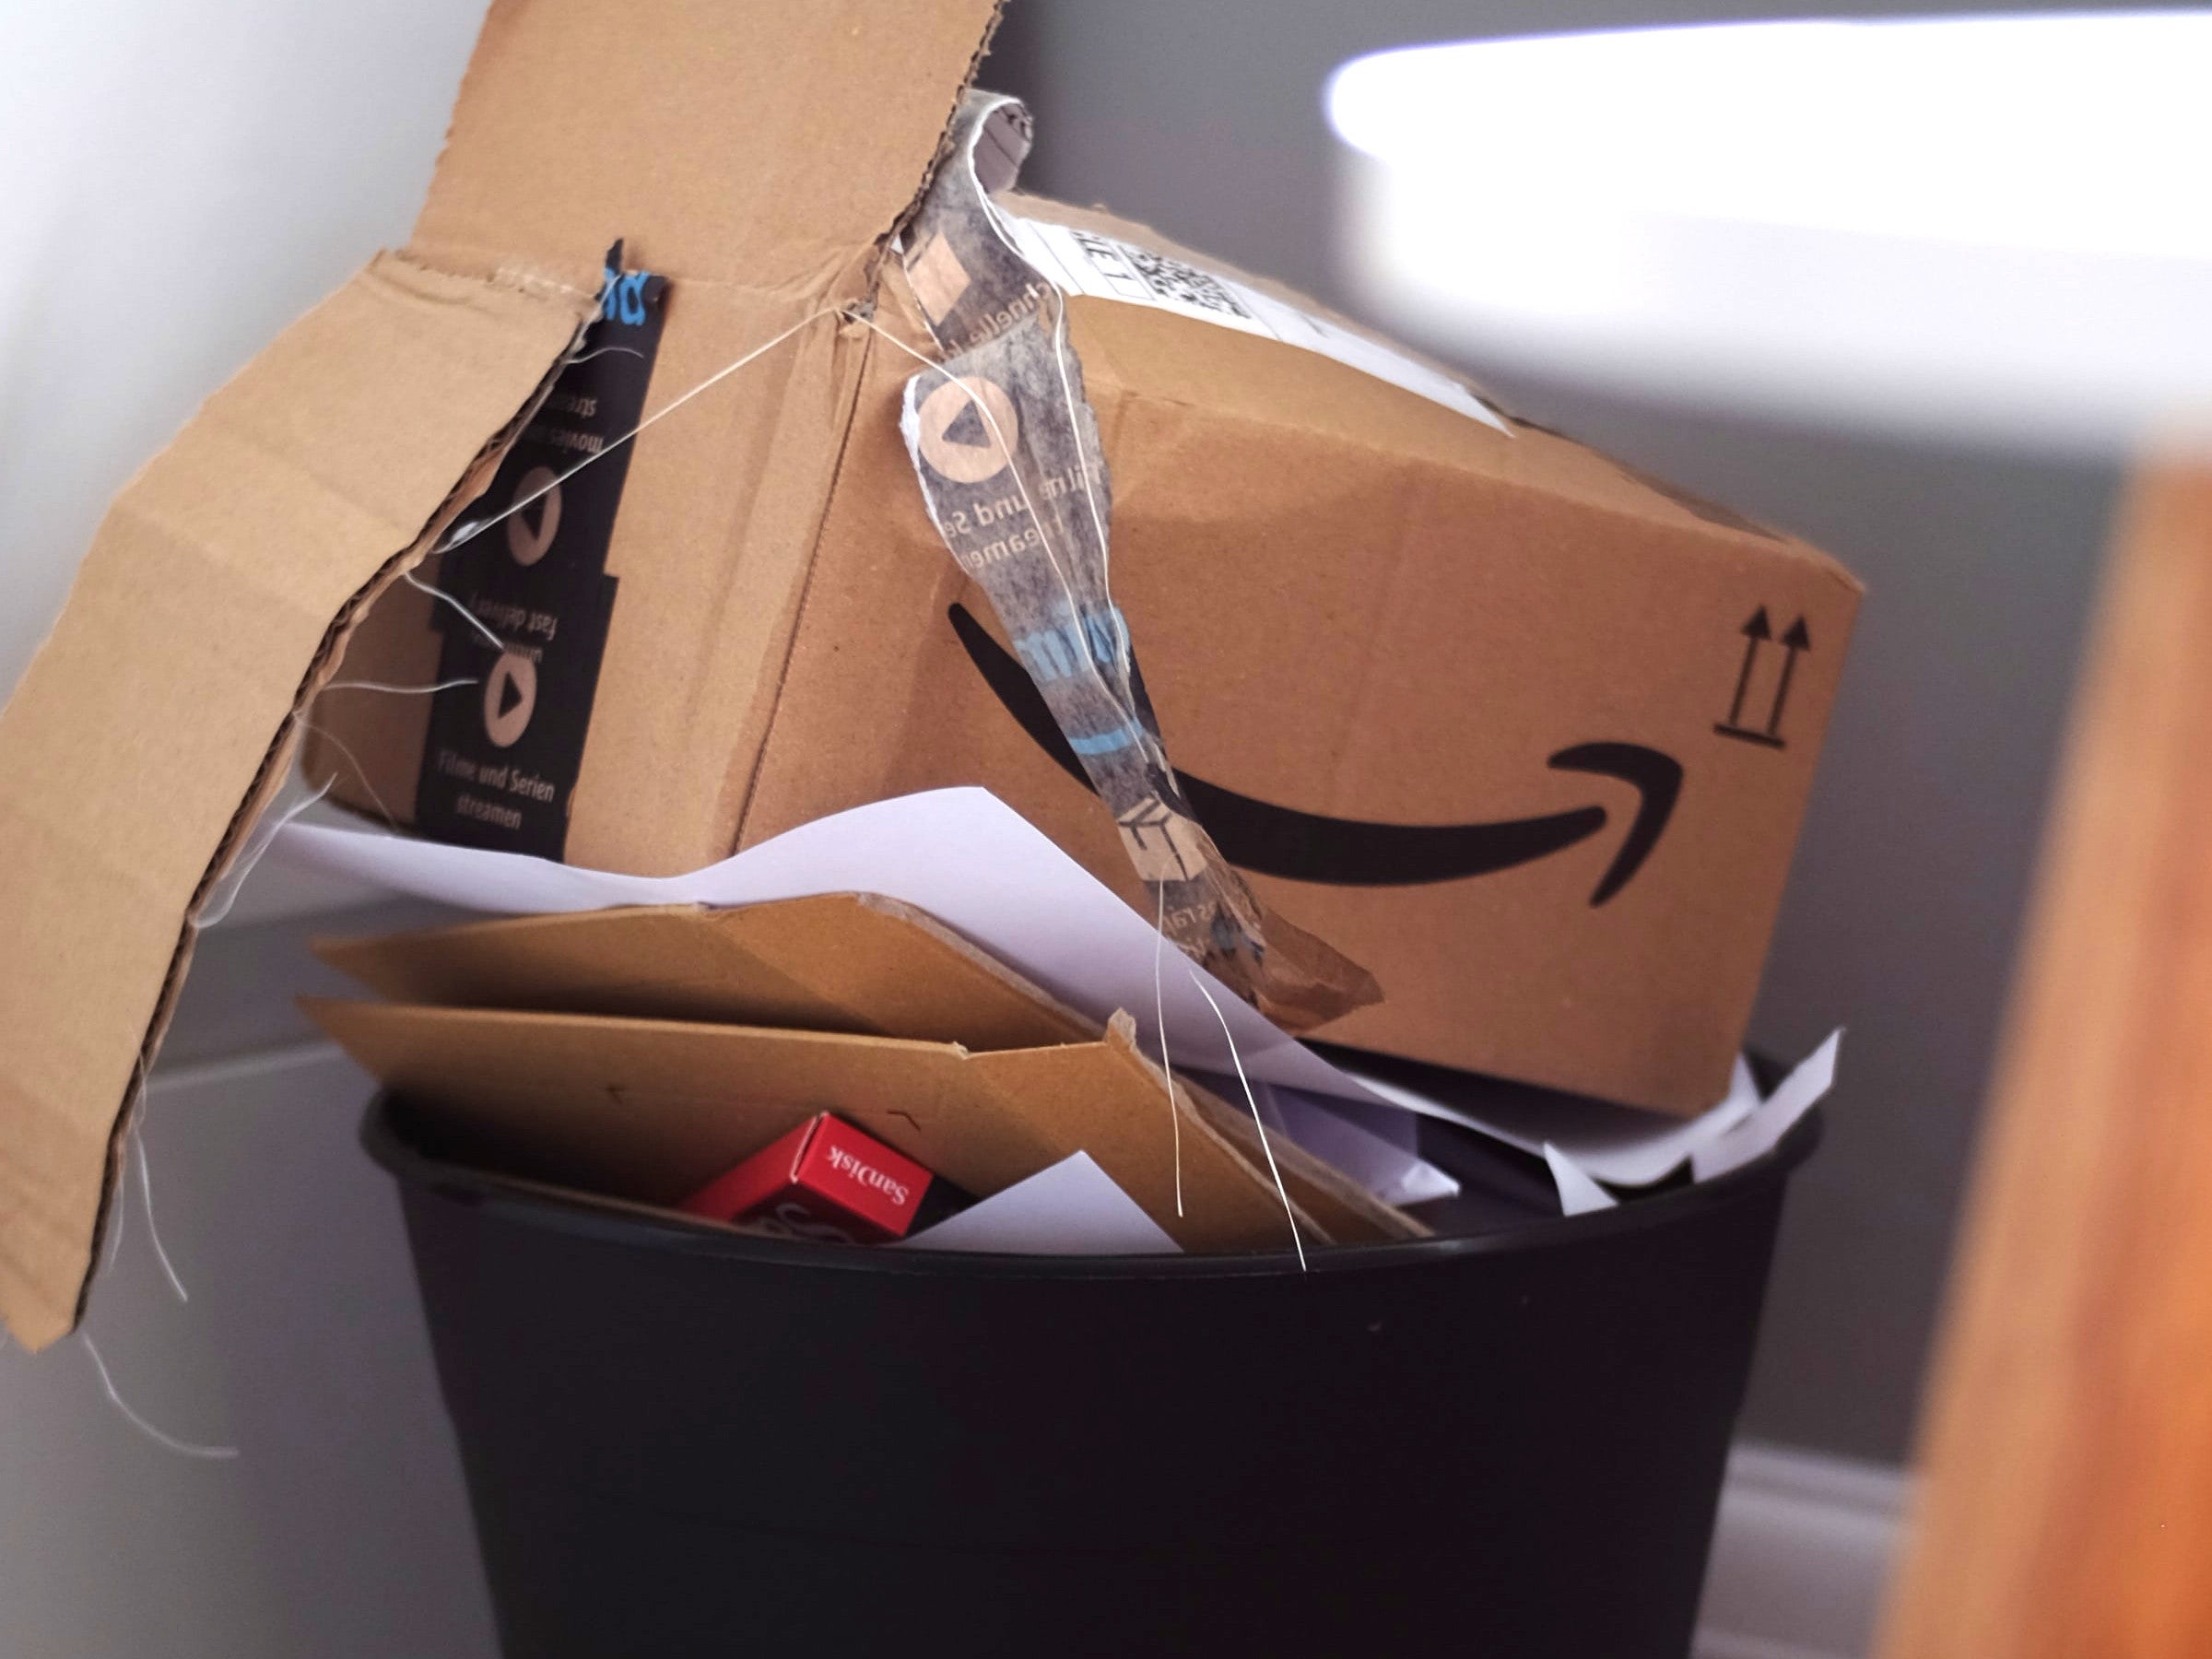 #Amazon: Nächster kostenloser Dienst vor dem Aus